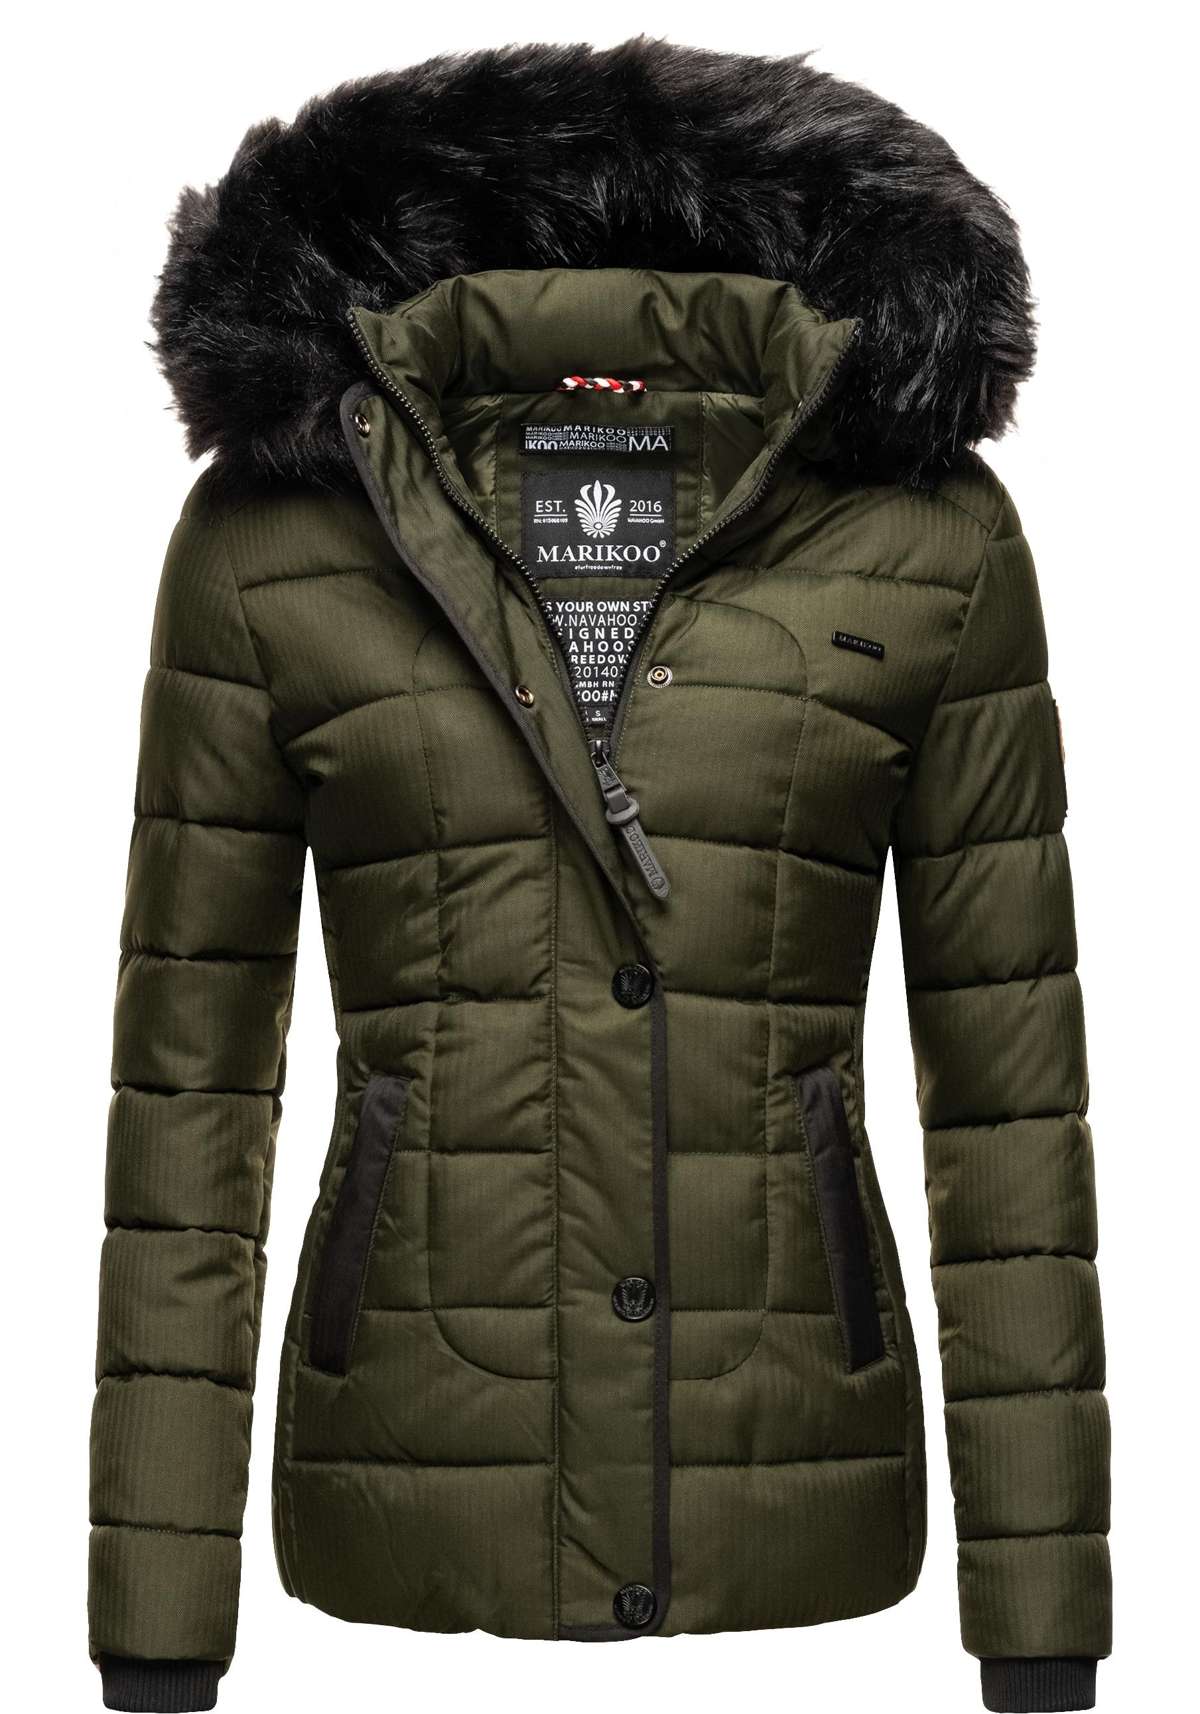 Стеганая куртка с капюшоном, модная зимняя куртка с капюшоном из искусственного меха